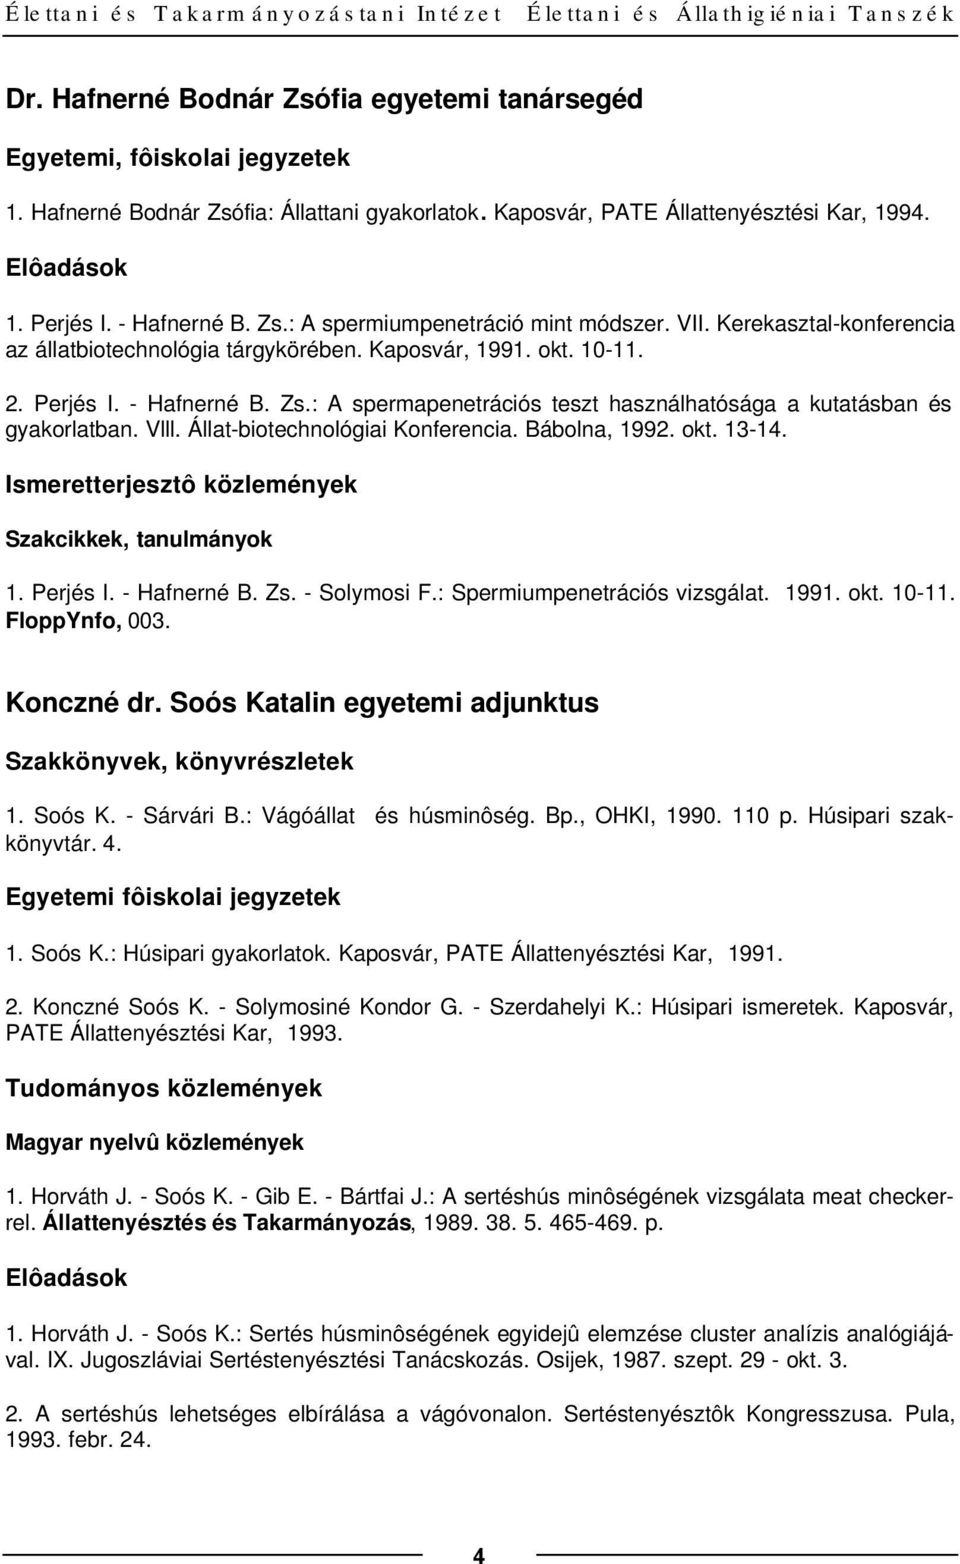 Kaposvár, 1991. okt. 10-11. 2. Perjés I. - Hafnerné B. Zs.: A spermapenetrációs teszt használhatósága a kutatásban és gyakorlatban. Vlll. Állat-biotechnológiai Konferencia. Bábolna, 1992. okt. 13-14.